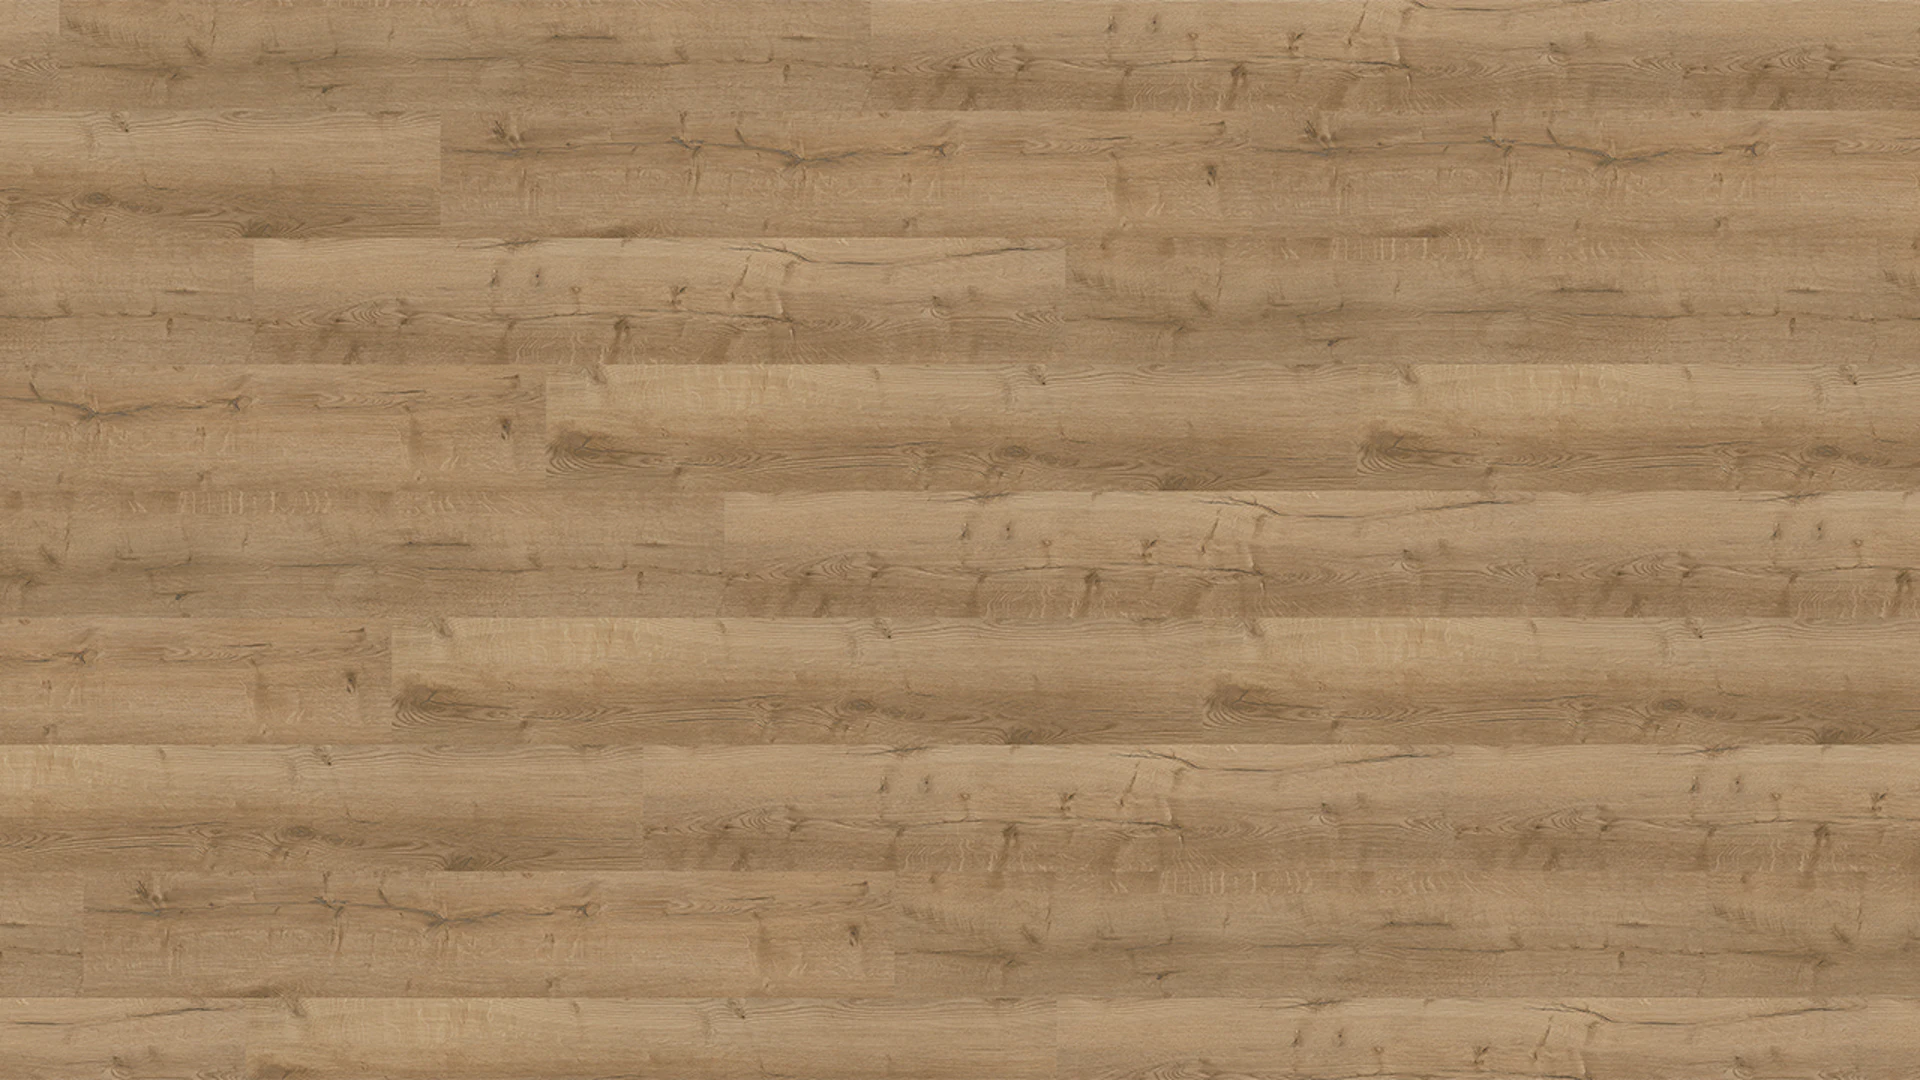 Wineo Sol PVC Rigide clipsable - 400 wood XL Comfort Oak Nature | isolation phonique intégrée (RLC291WXL)